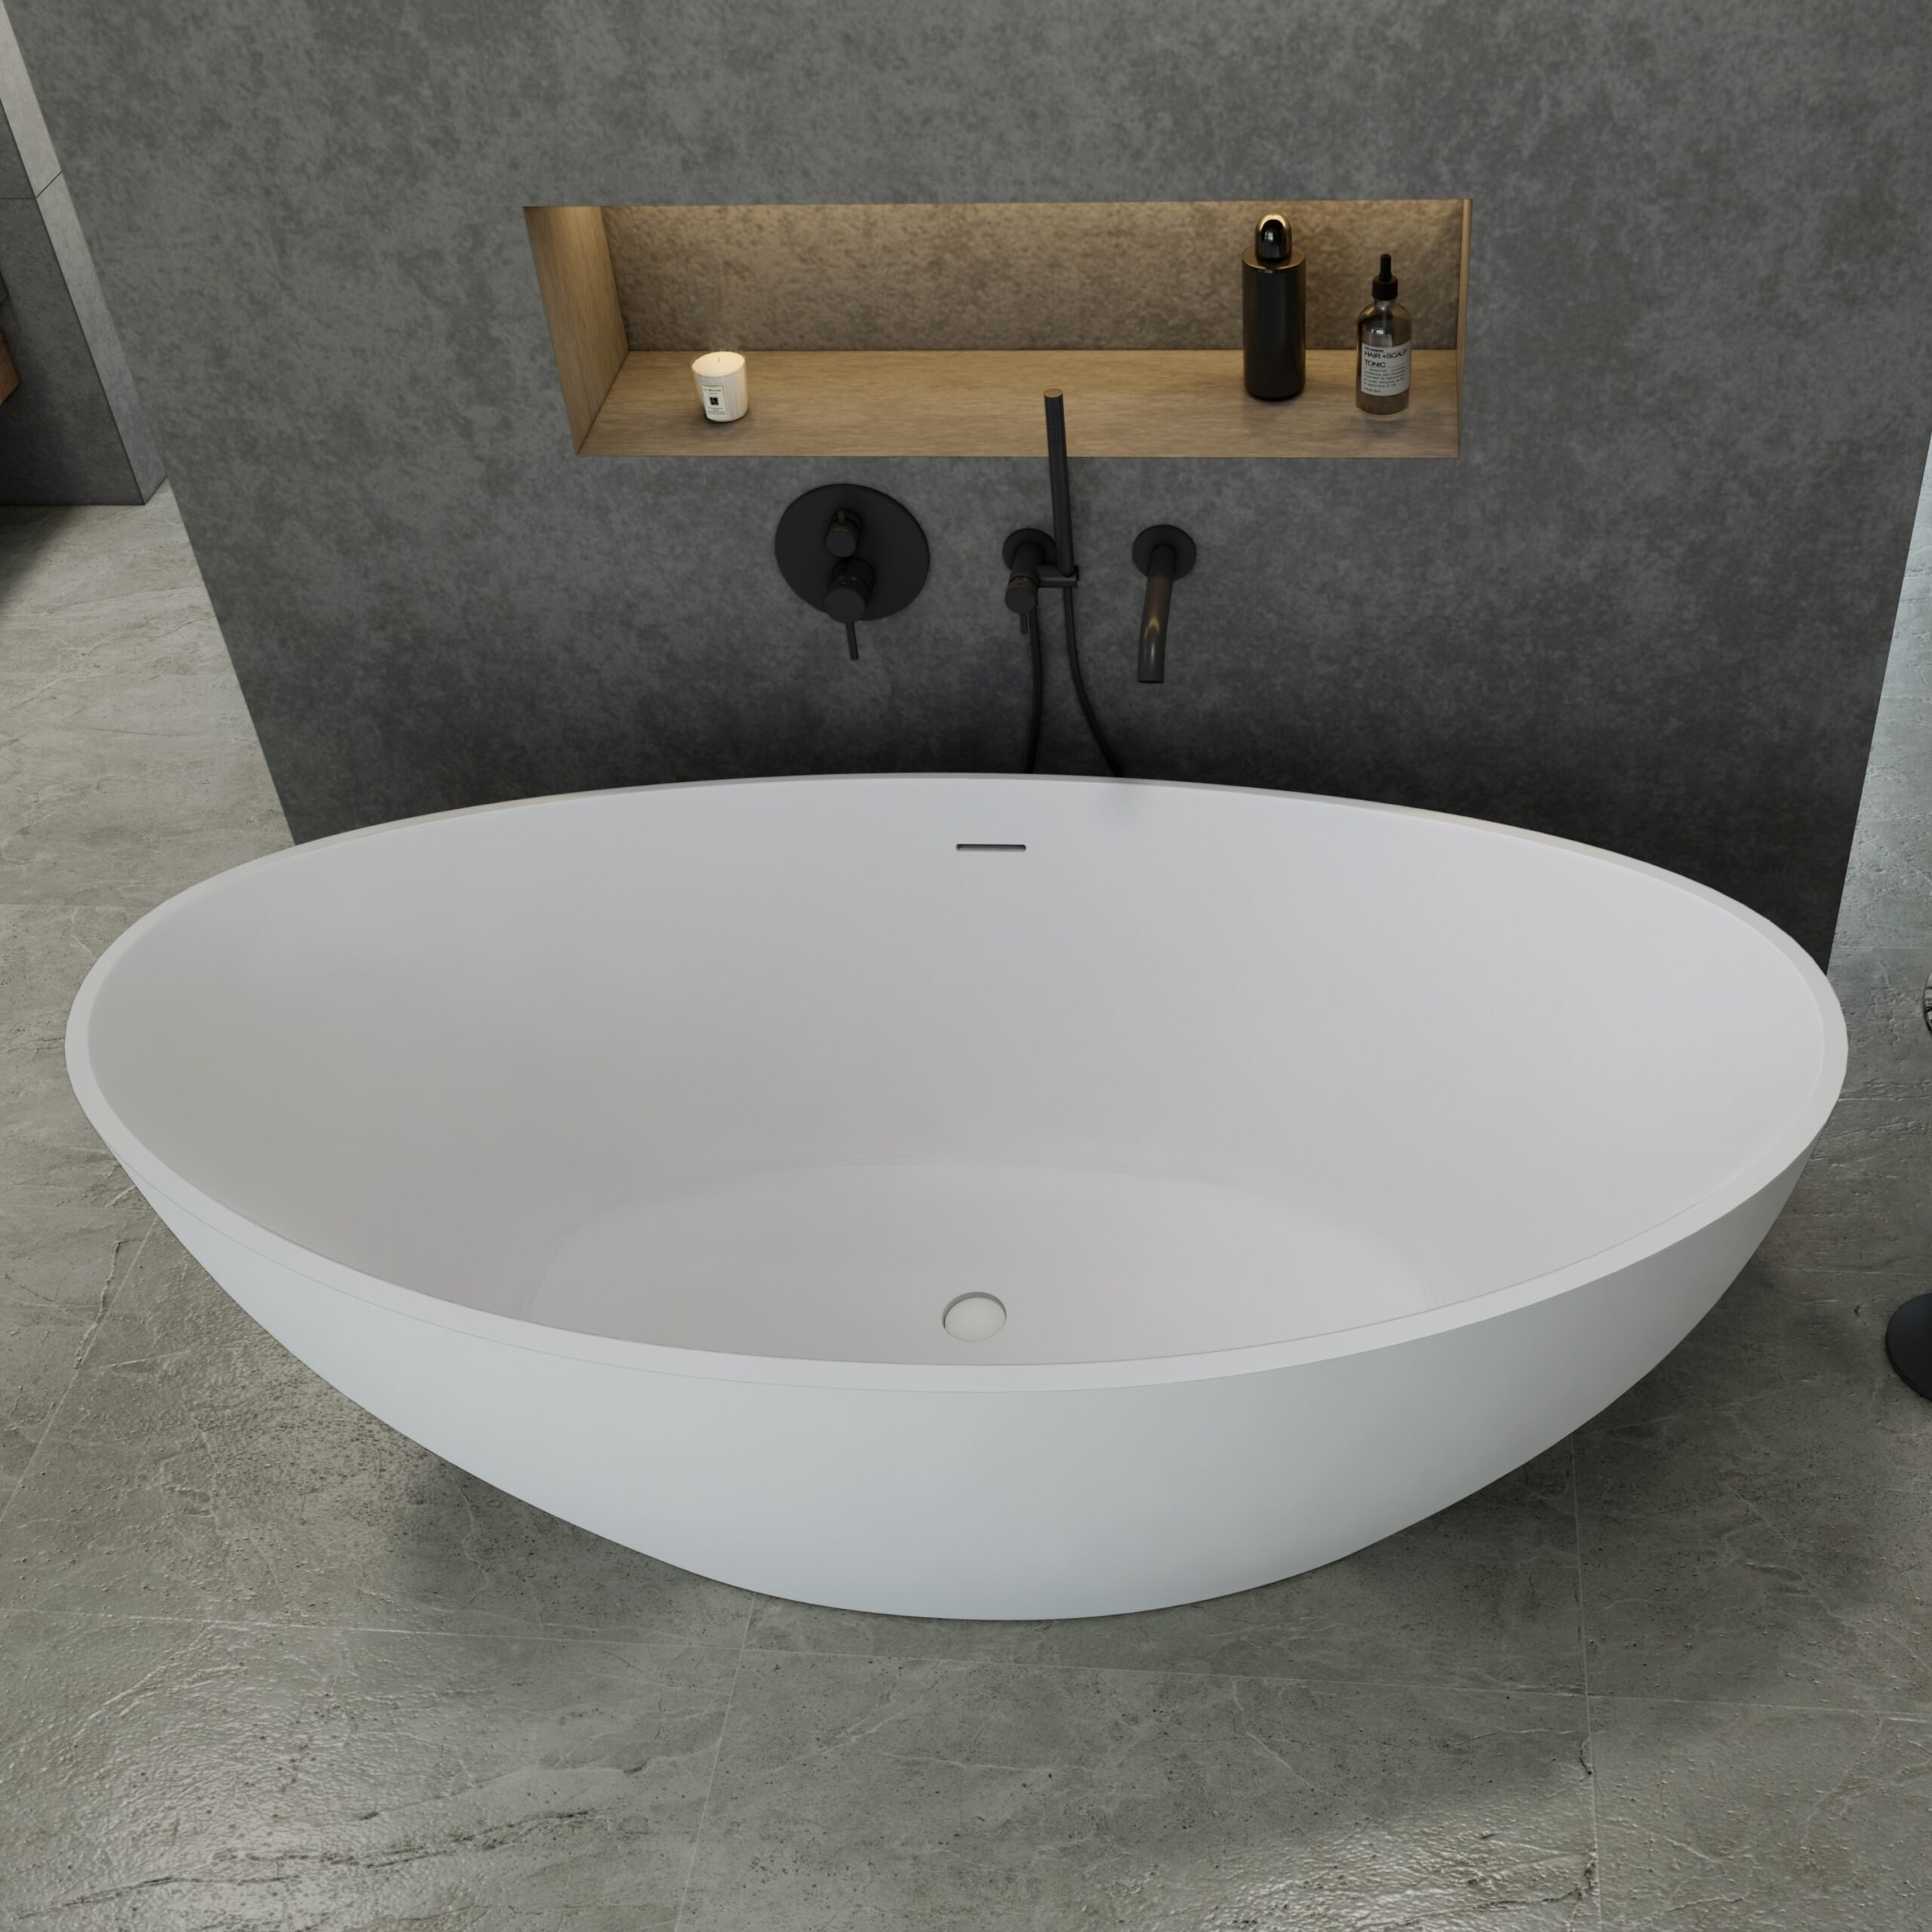 groep Boekhouder Plons Solid Surface Davina vrijstaand bad 180x90x62cm mat wit massief - Voordelig  Design Sanitair